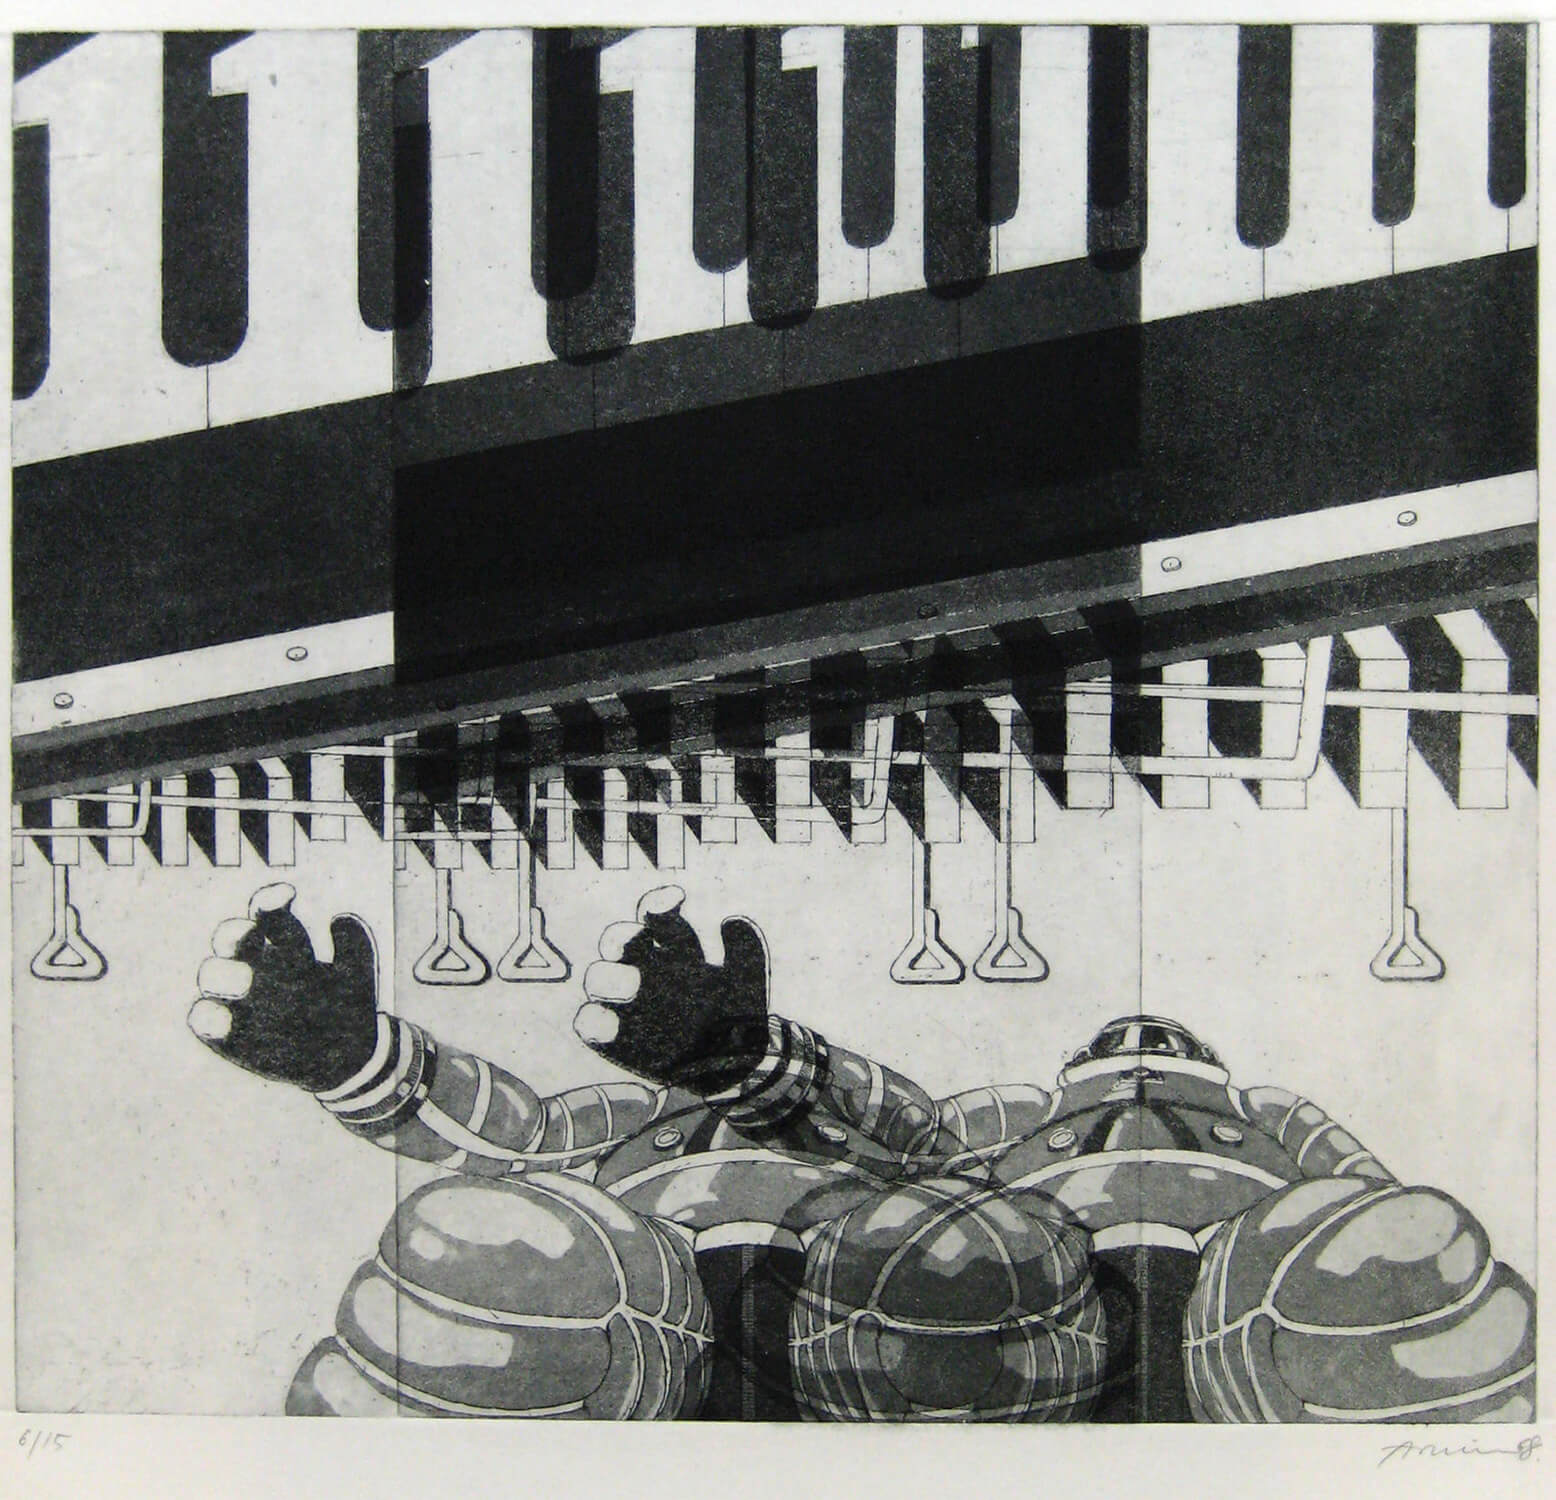 Bettina von Arnim, one, 1968, Radierung, Auflage: 15, 34,5 x 38,5 cm (nur als Mappe mit 5 Radierungen)